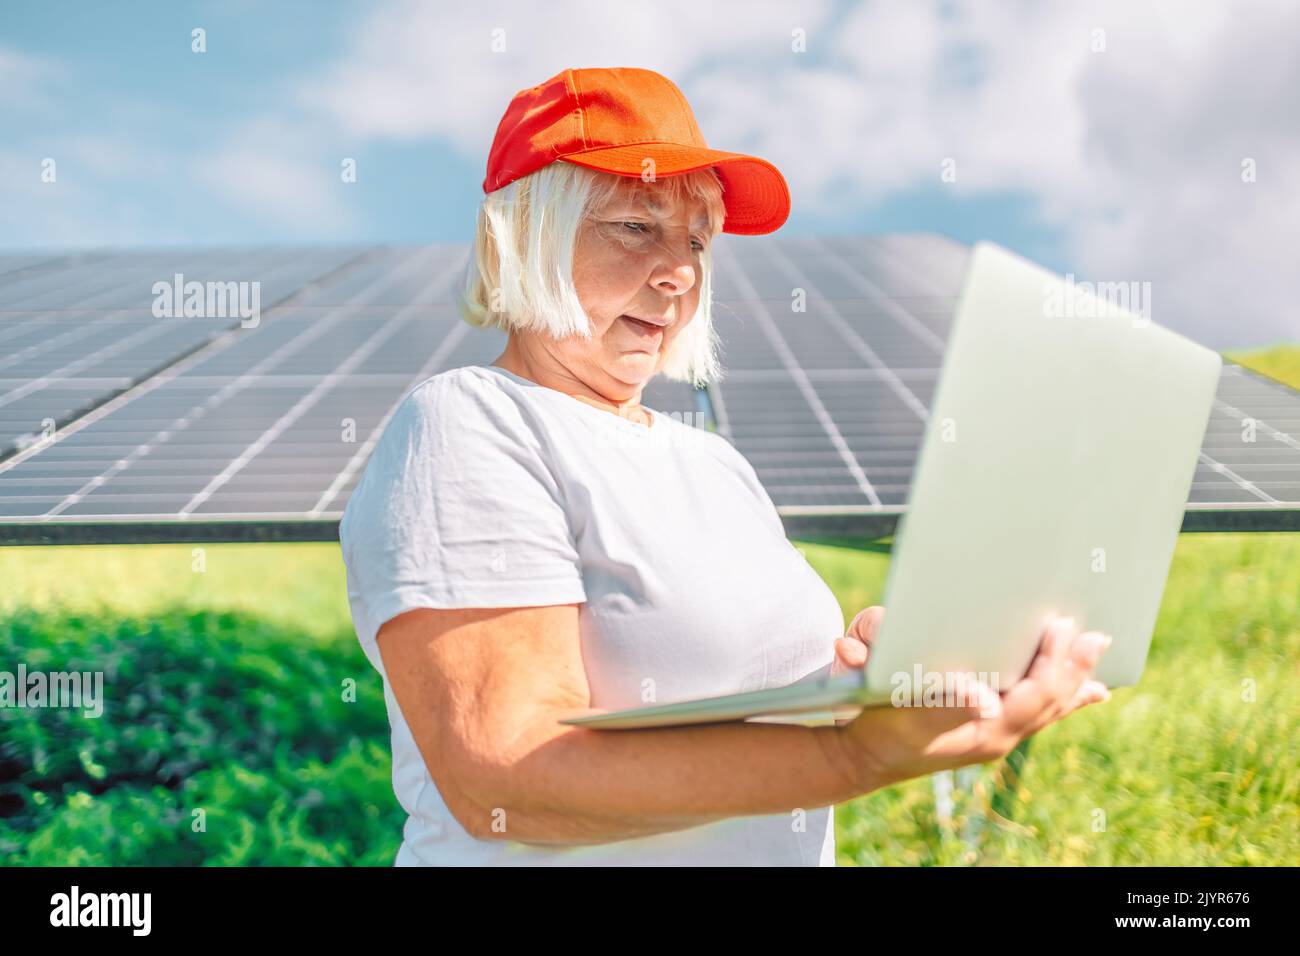 Ingegnere donna d'affari che utilizza un tablet vicino a pannelli solari. Energia rinnovabile, tecnologia, elettricità, concetto di servizio Foto Stock